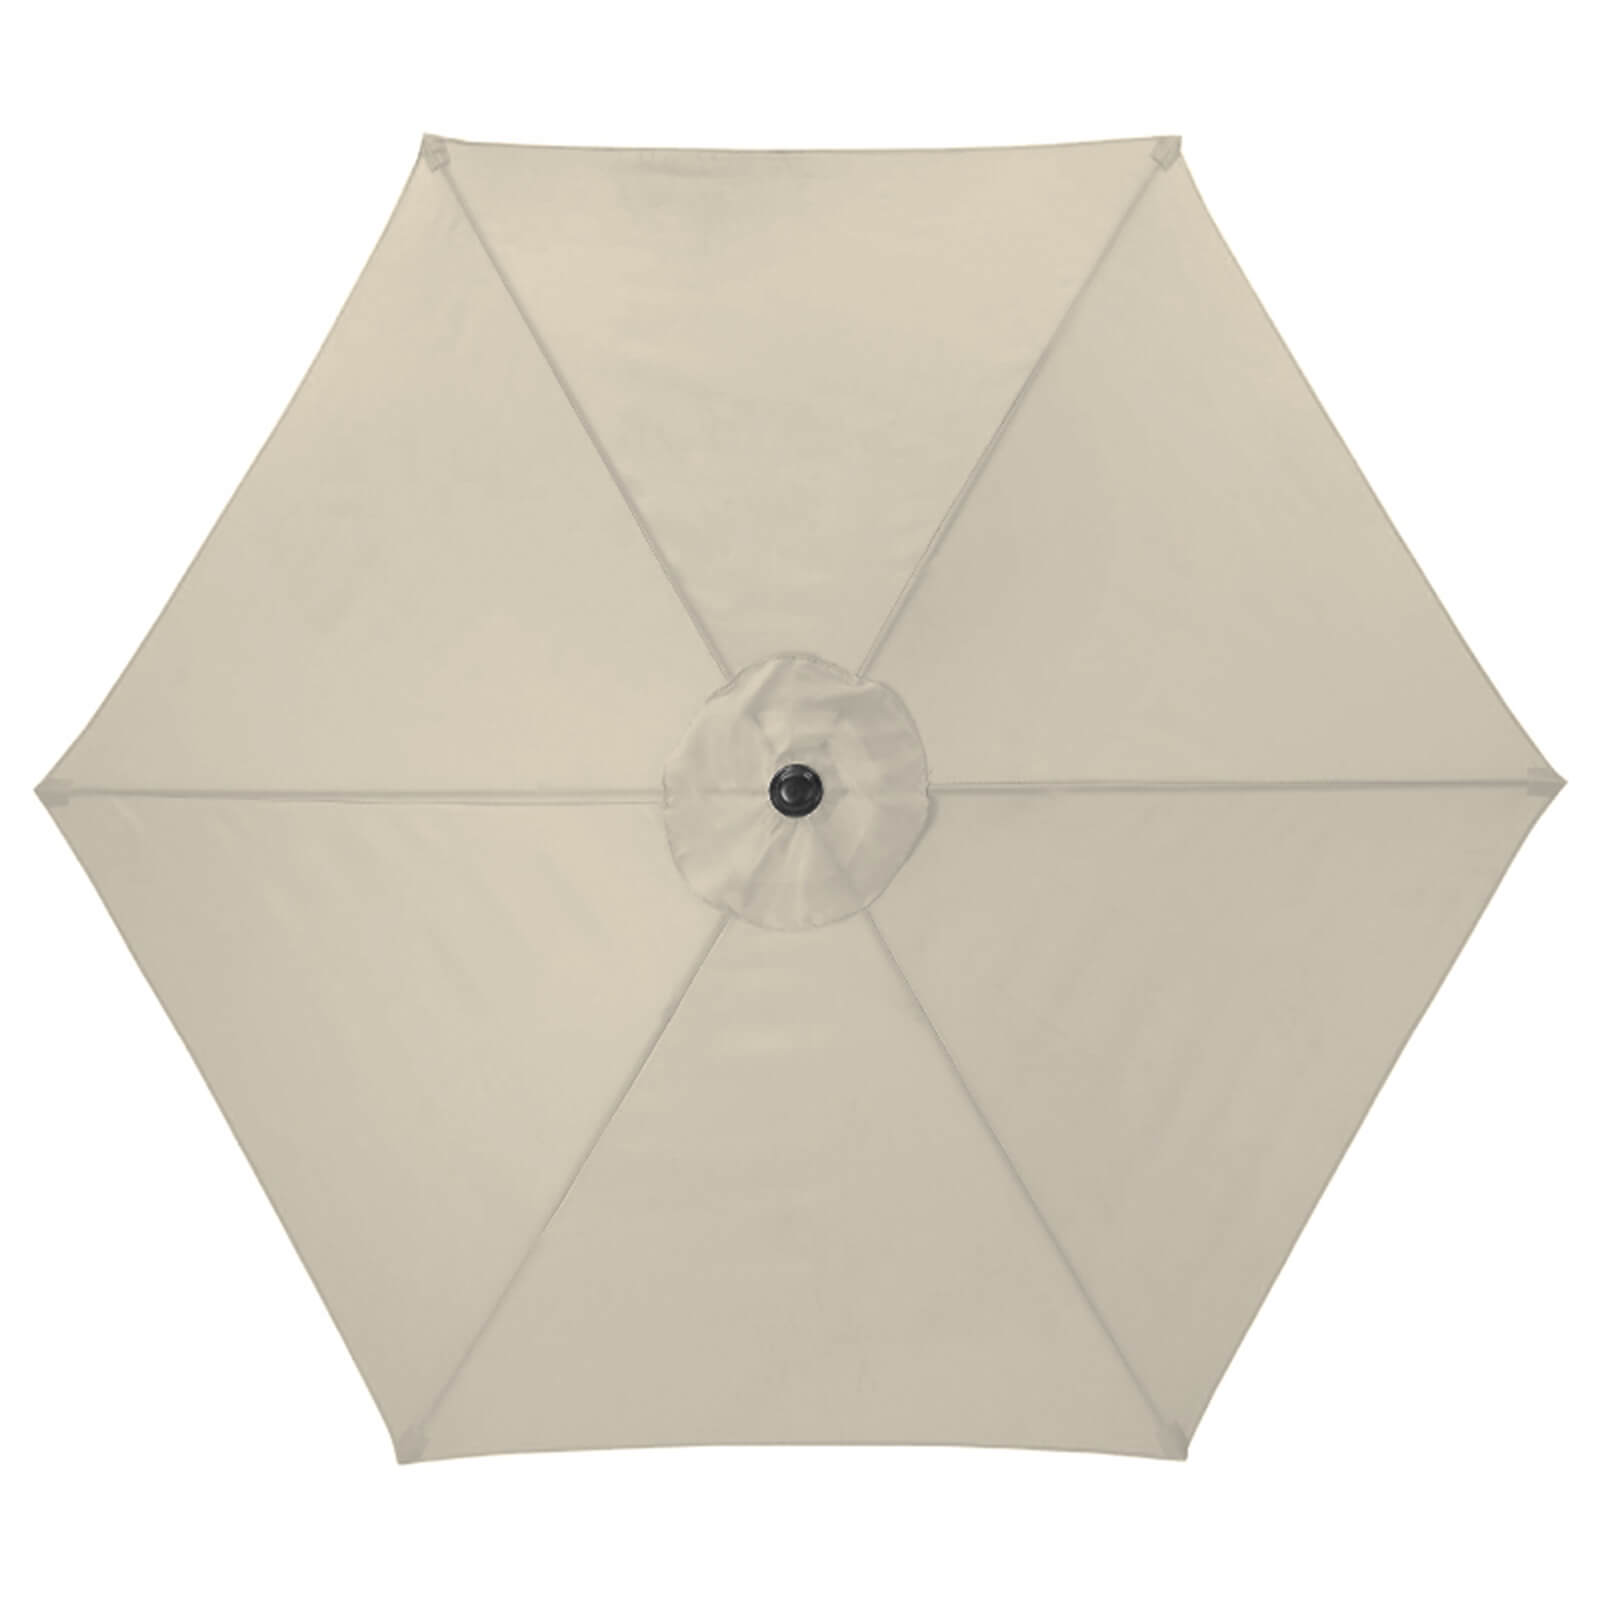 Aluminium Umbrella Parasol - 2.4m - Beige